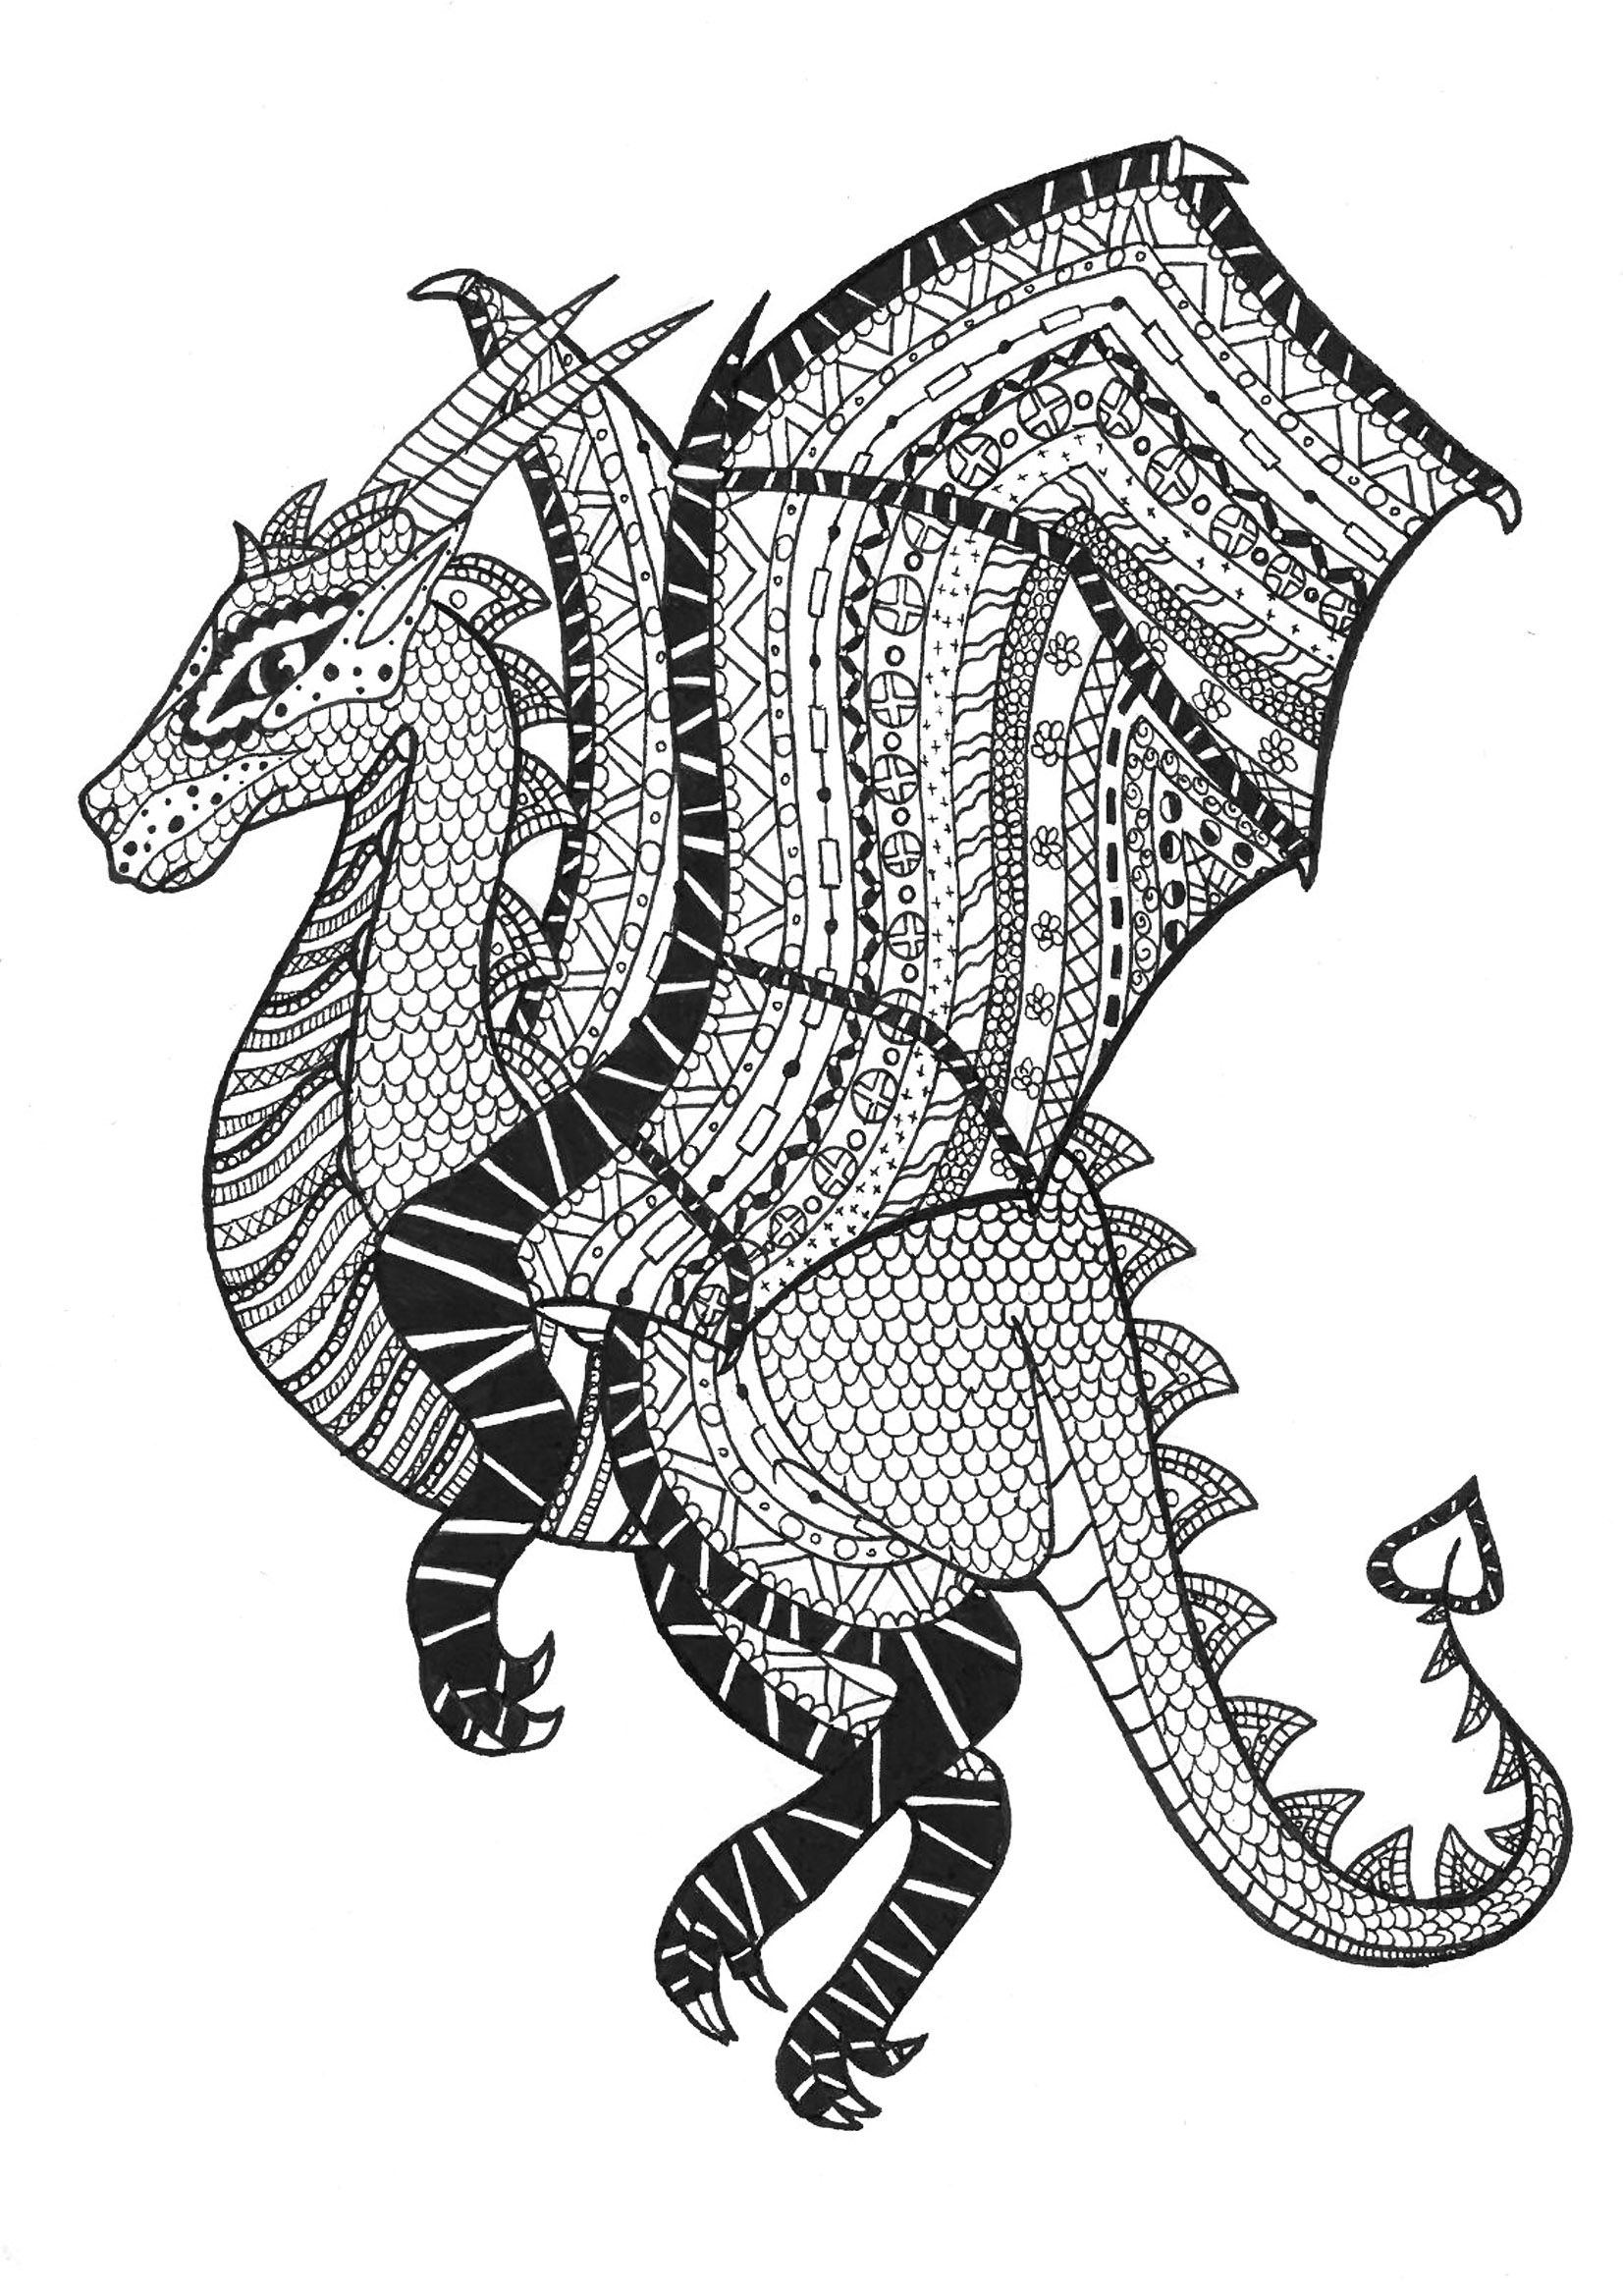 Dragão em estilo zentangle. Muitos padrões para colorir nas asas e no corpo deste dragão, Artista : Rachel